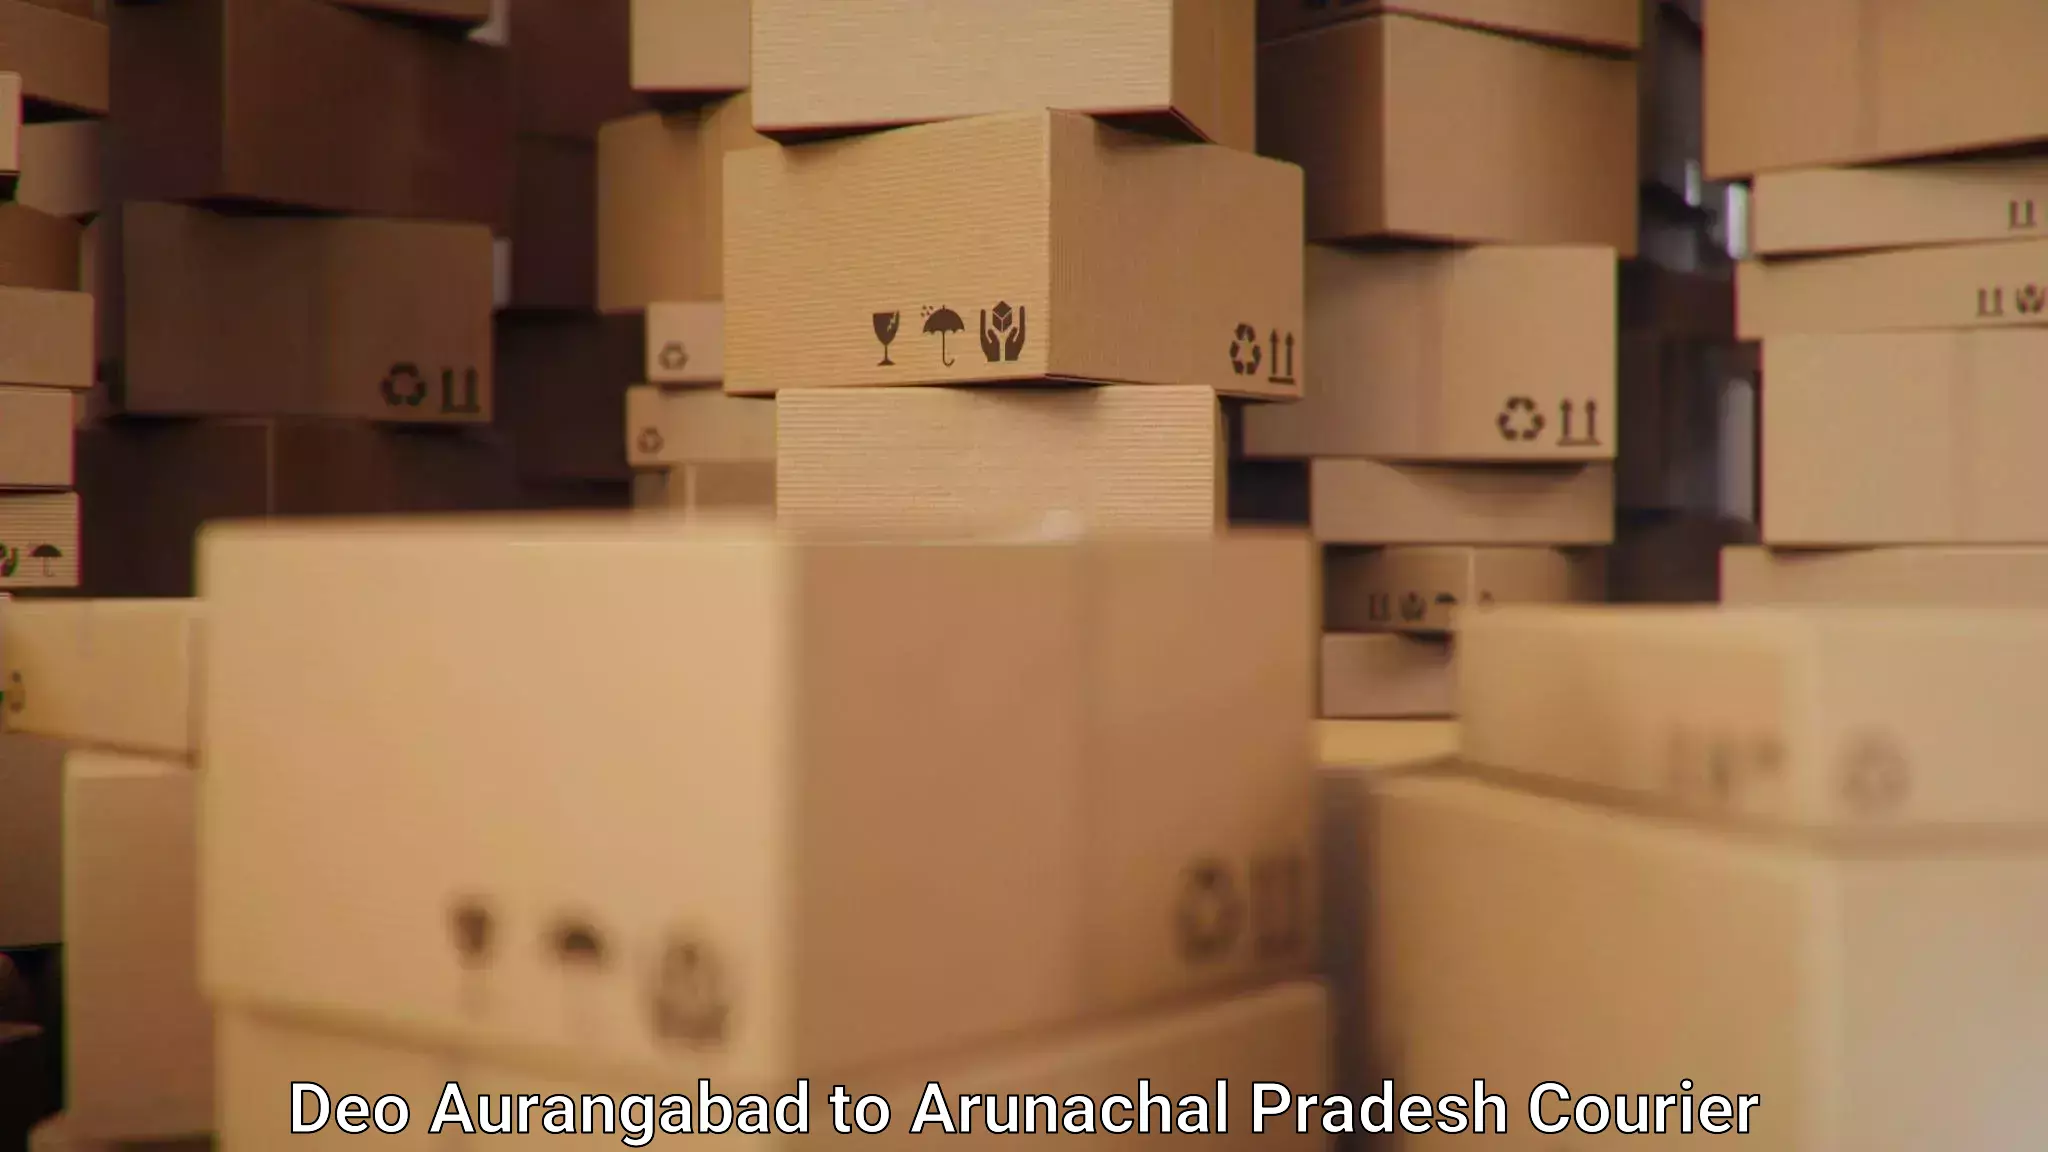 Flexible delivery scheduling Deo Aurangabad to Arunachal Pradesh